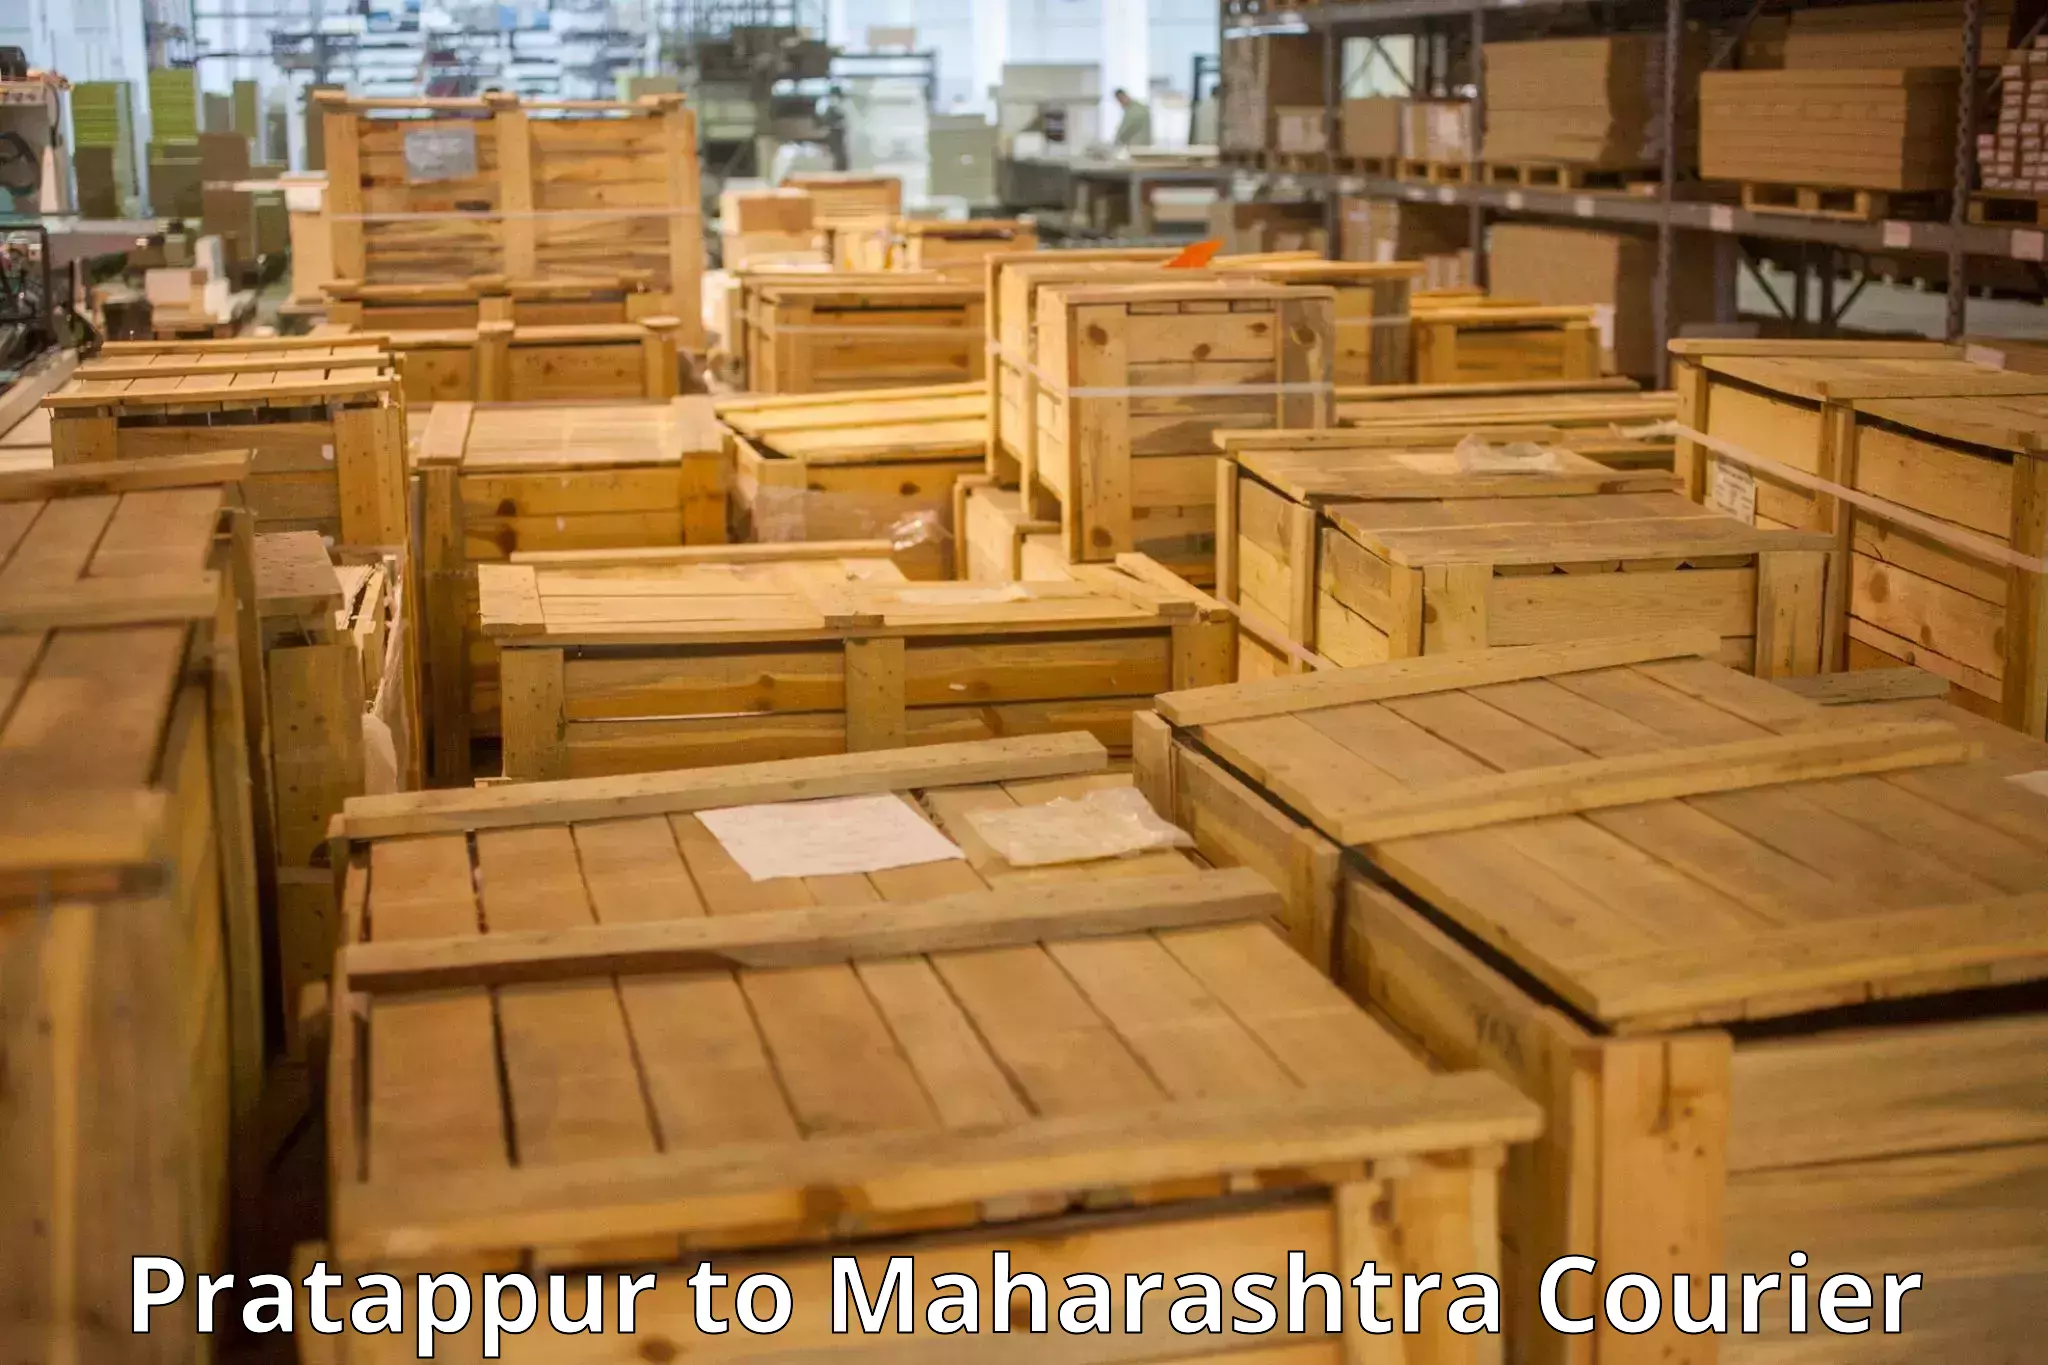 Baggage courier FAQs Pratappur to Tata Institute of Social Sciences Mumbai